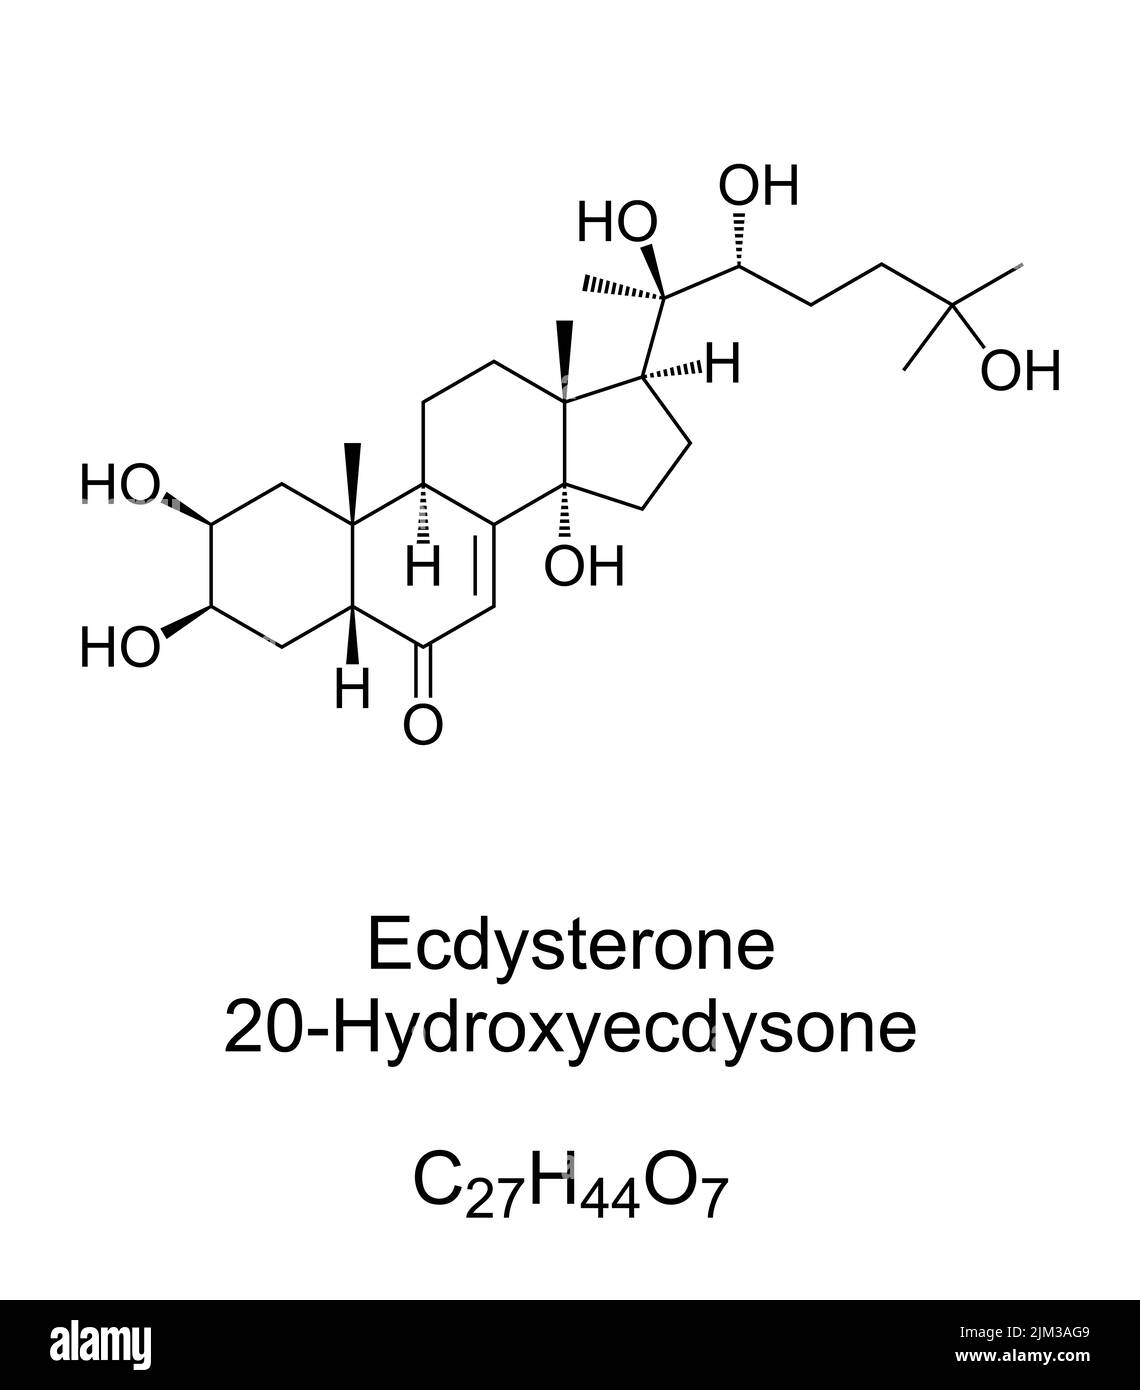 Ecdysteron, chemische Formel und Struktur. 20-Hydroxyecdyson, 20E, eines der häufigsten Häutung Hormone in Insekten. Wird als Steroid hermone verwendet. Stockfoto